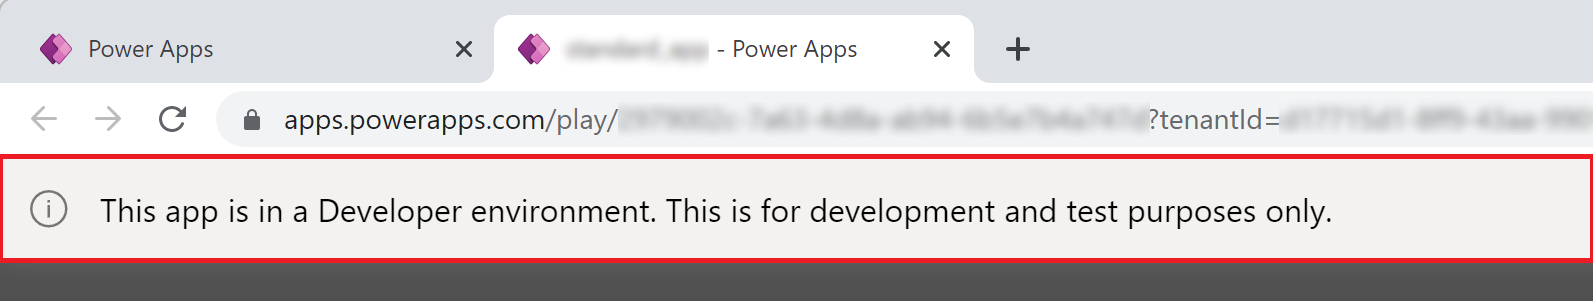 Power Apps Geliştirici Ortamı uygulama başlığı.